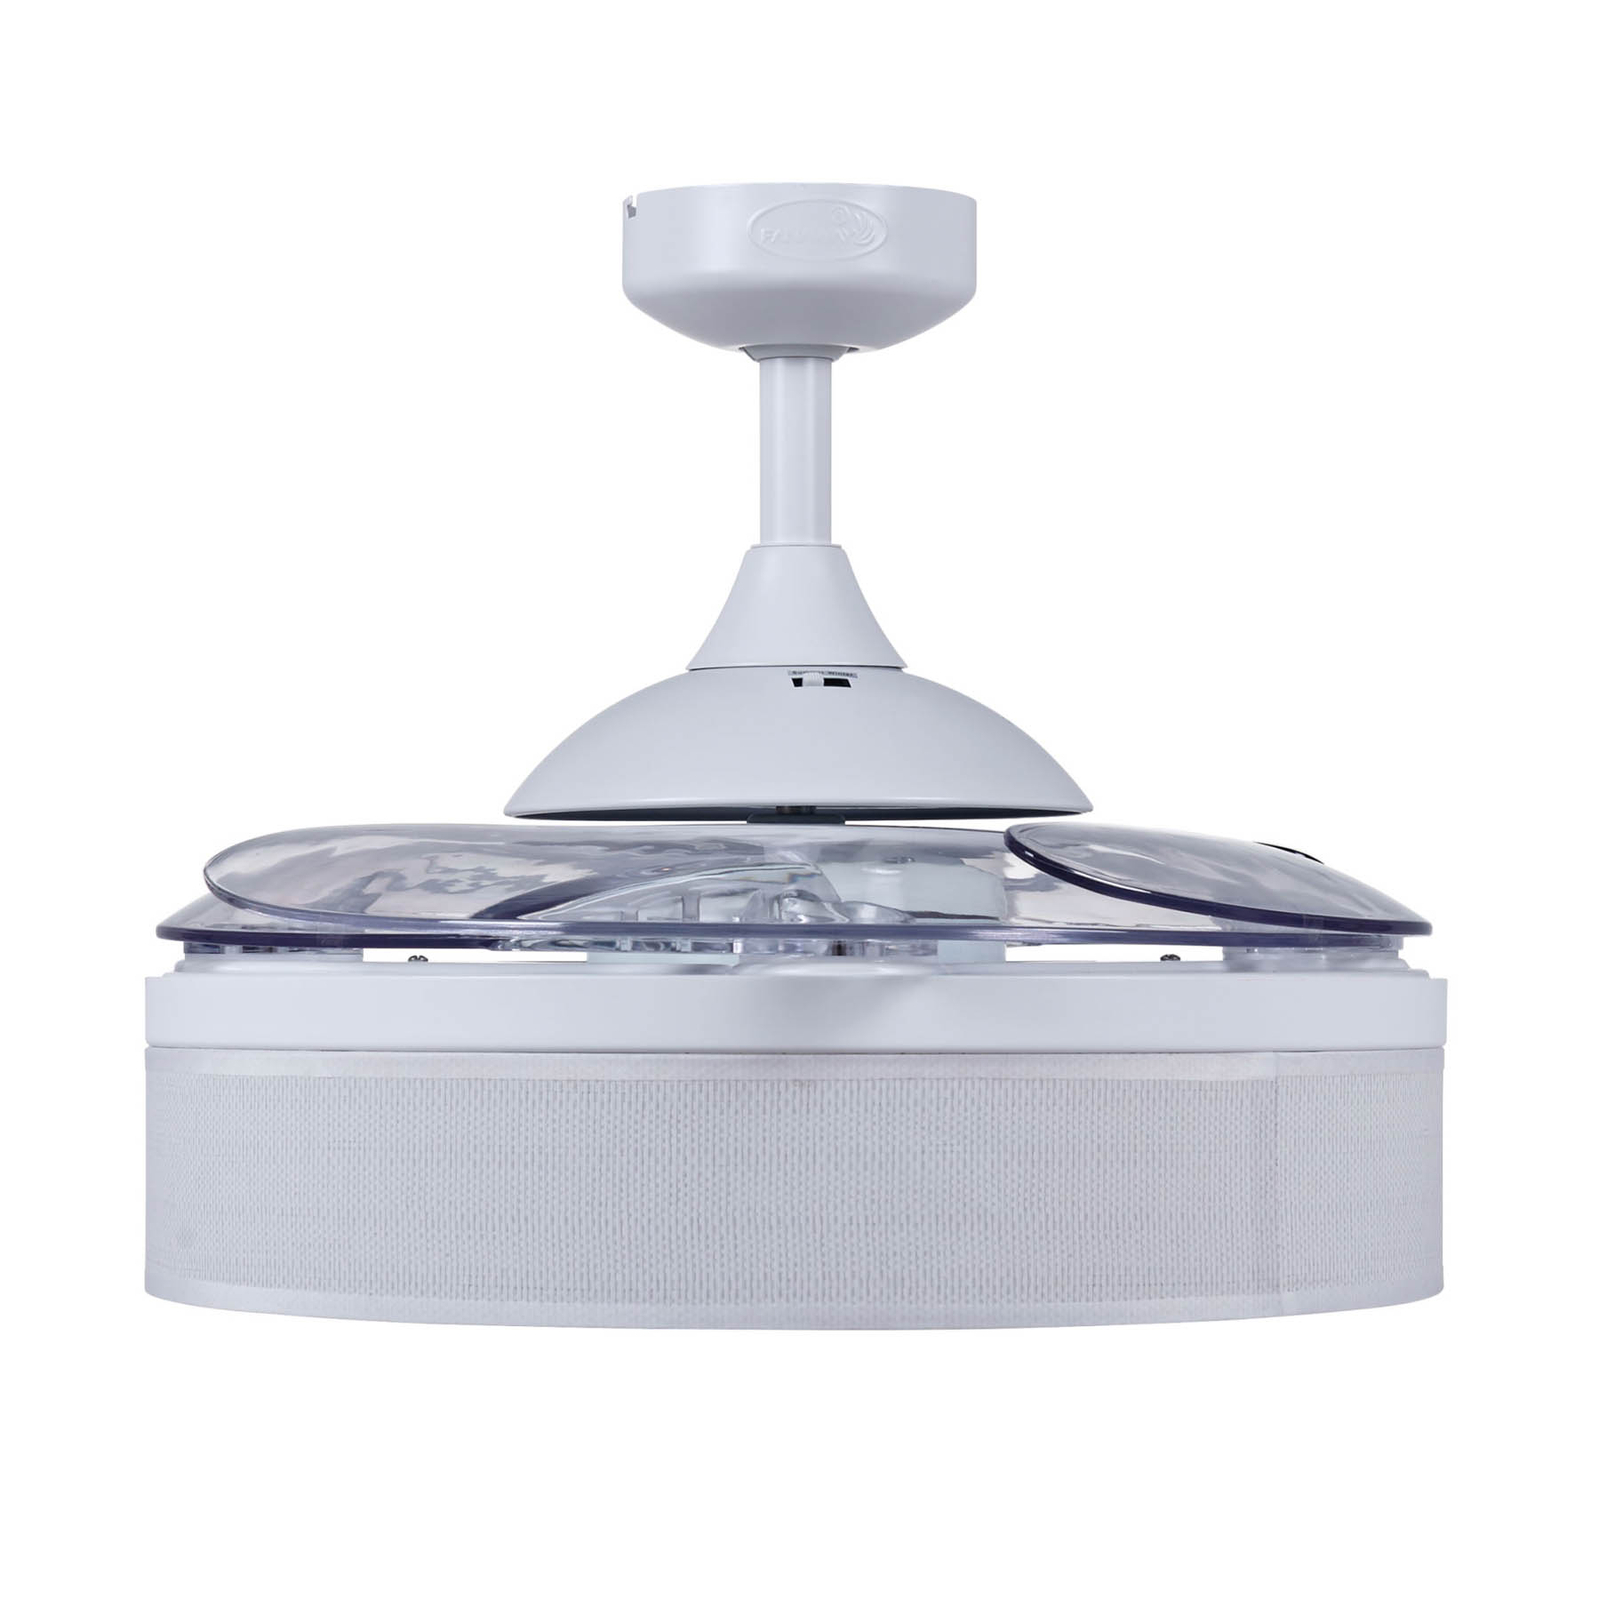 Beacon ceiling fan light Fanaway Fraser white/clear quiet